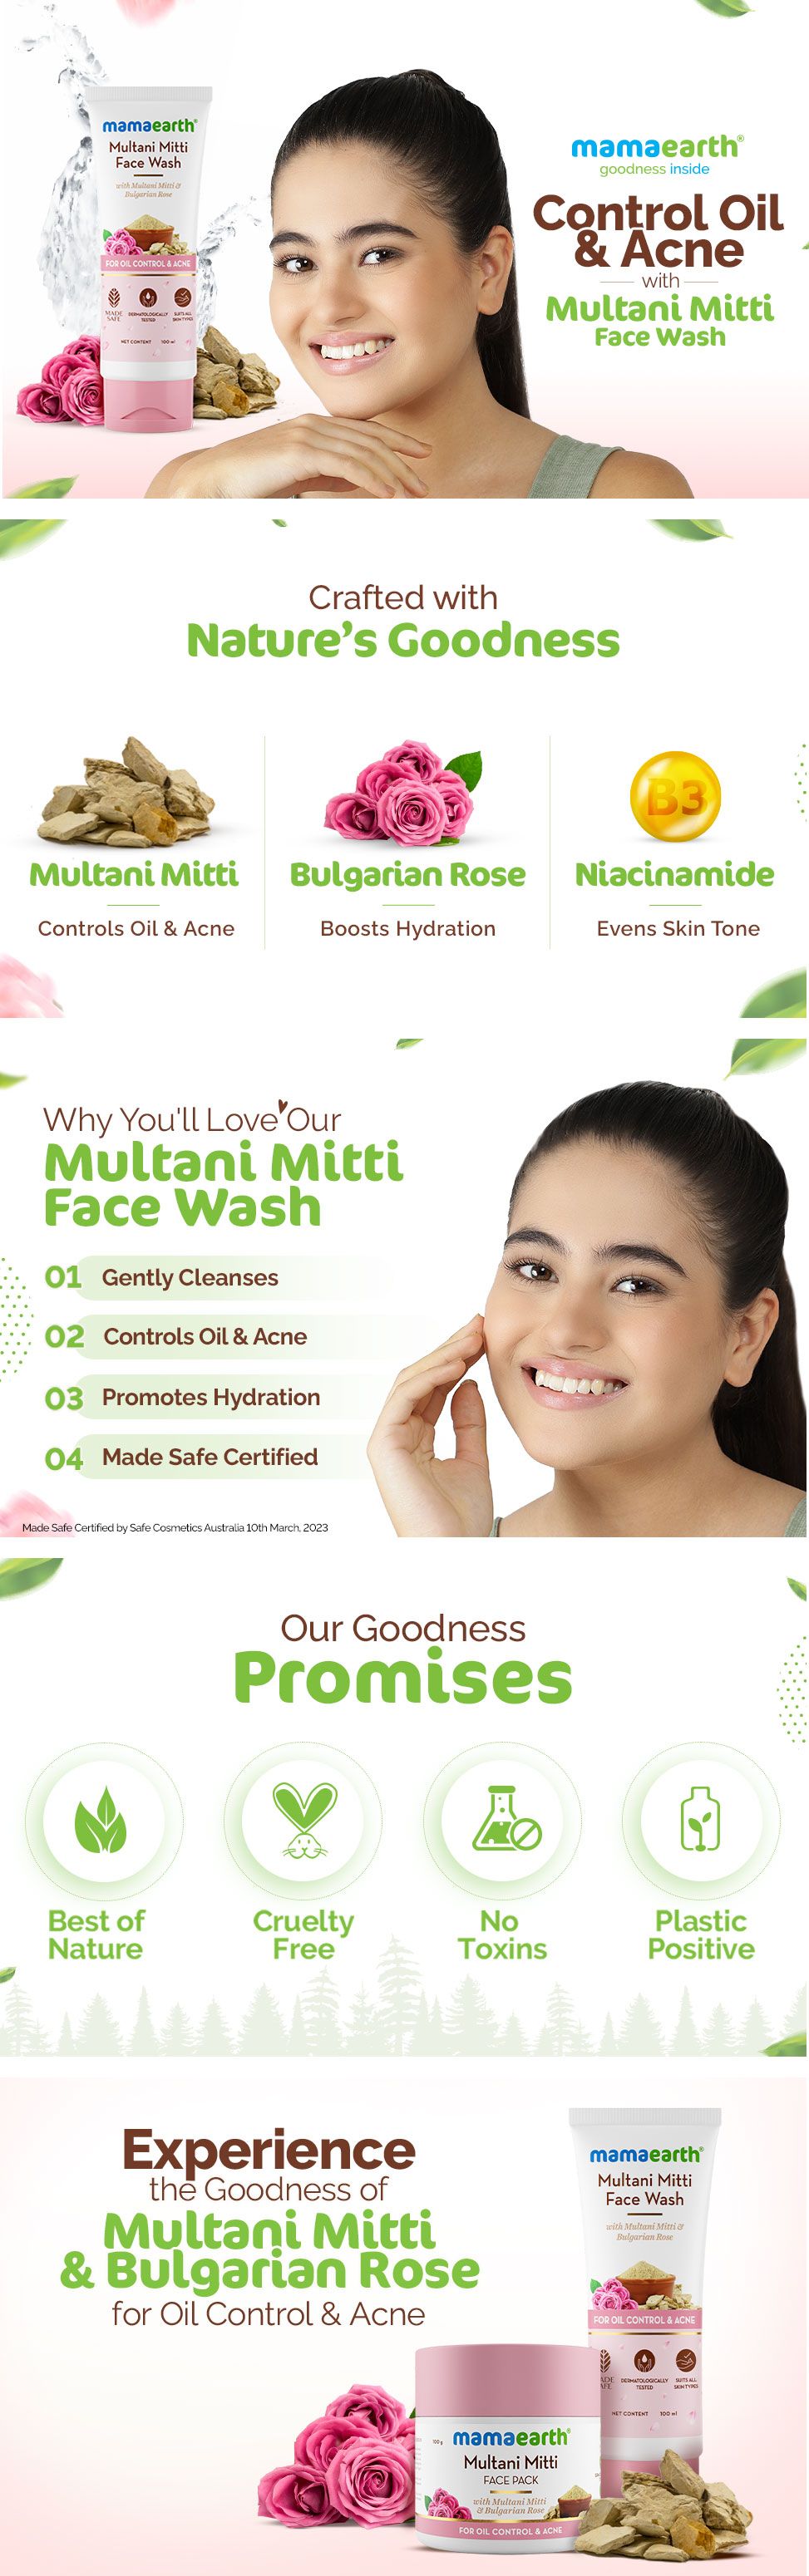 Multani mitti face wash benefits